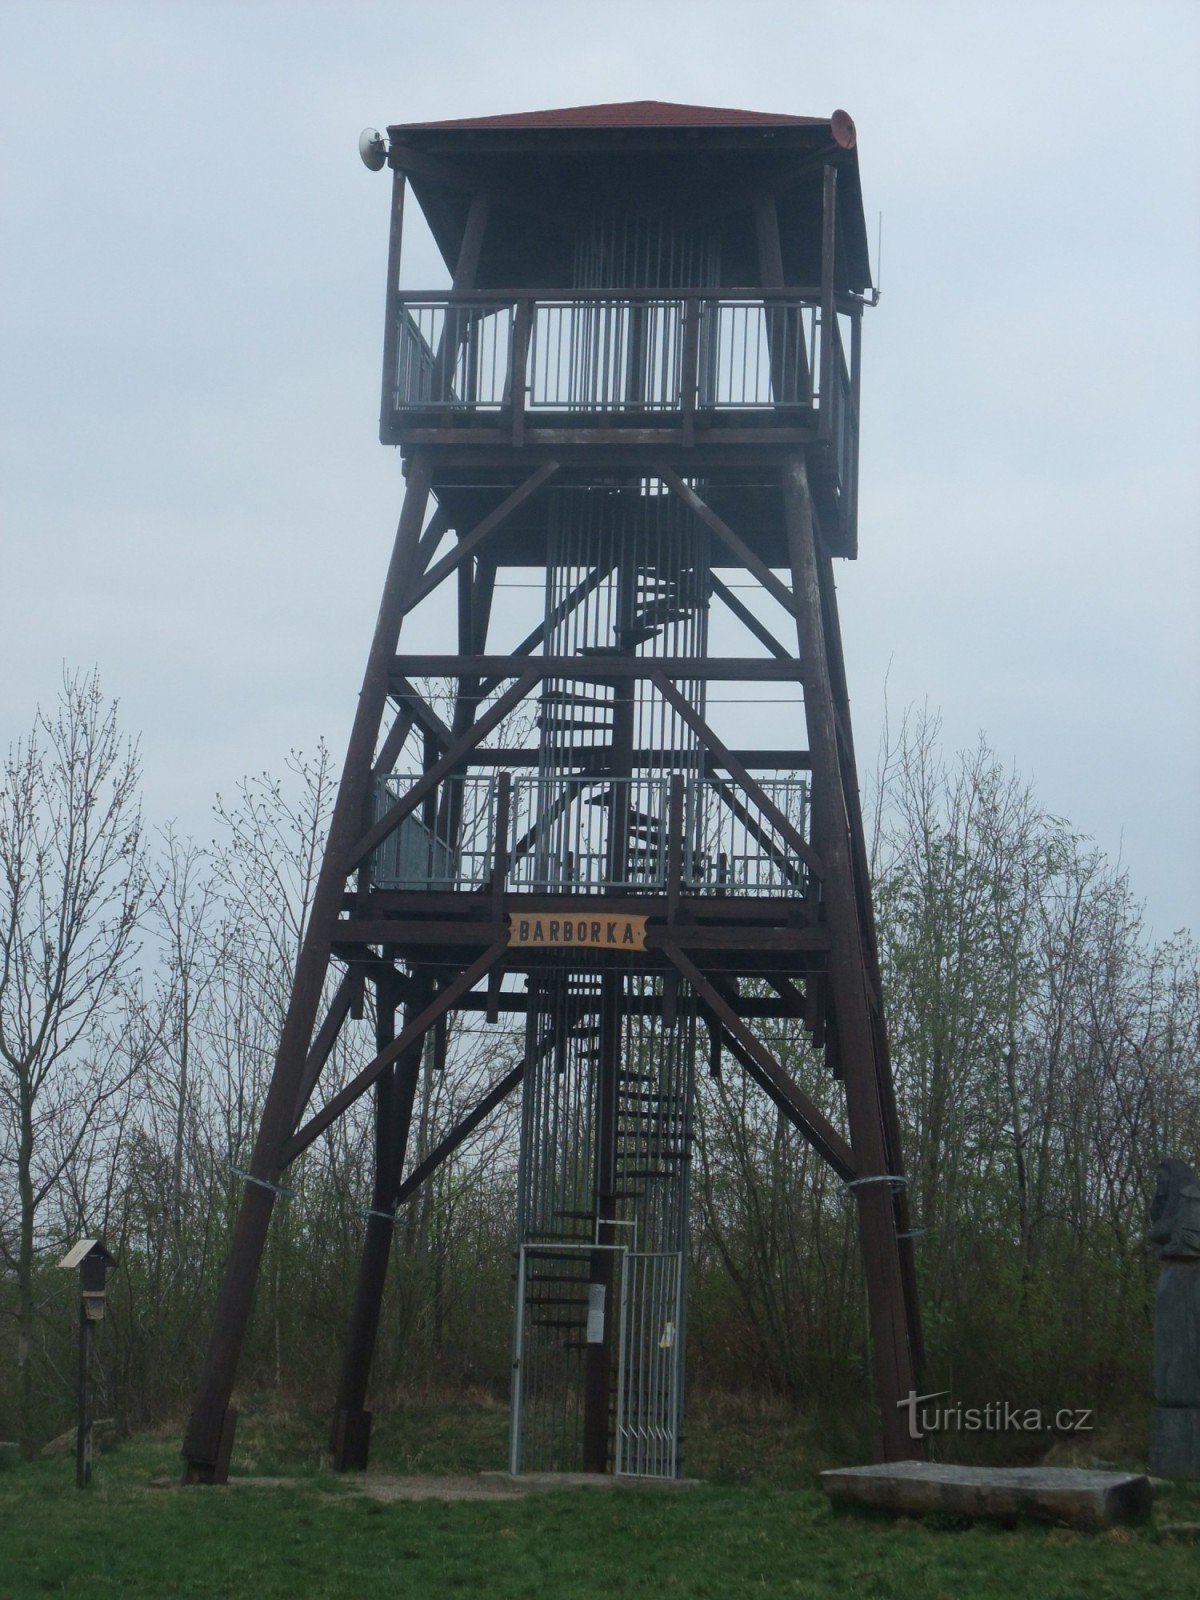 Turnul de observație Barborka